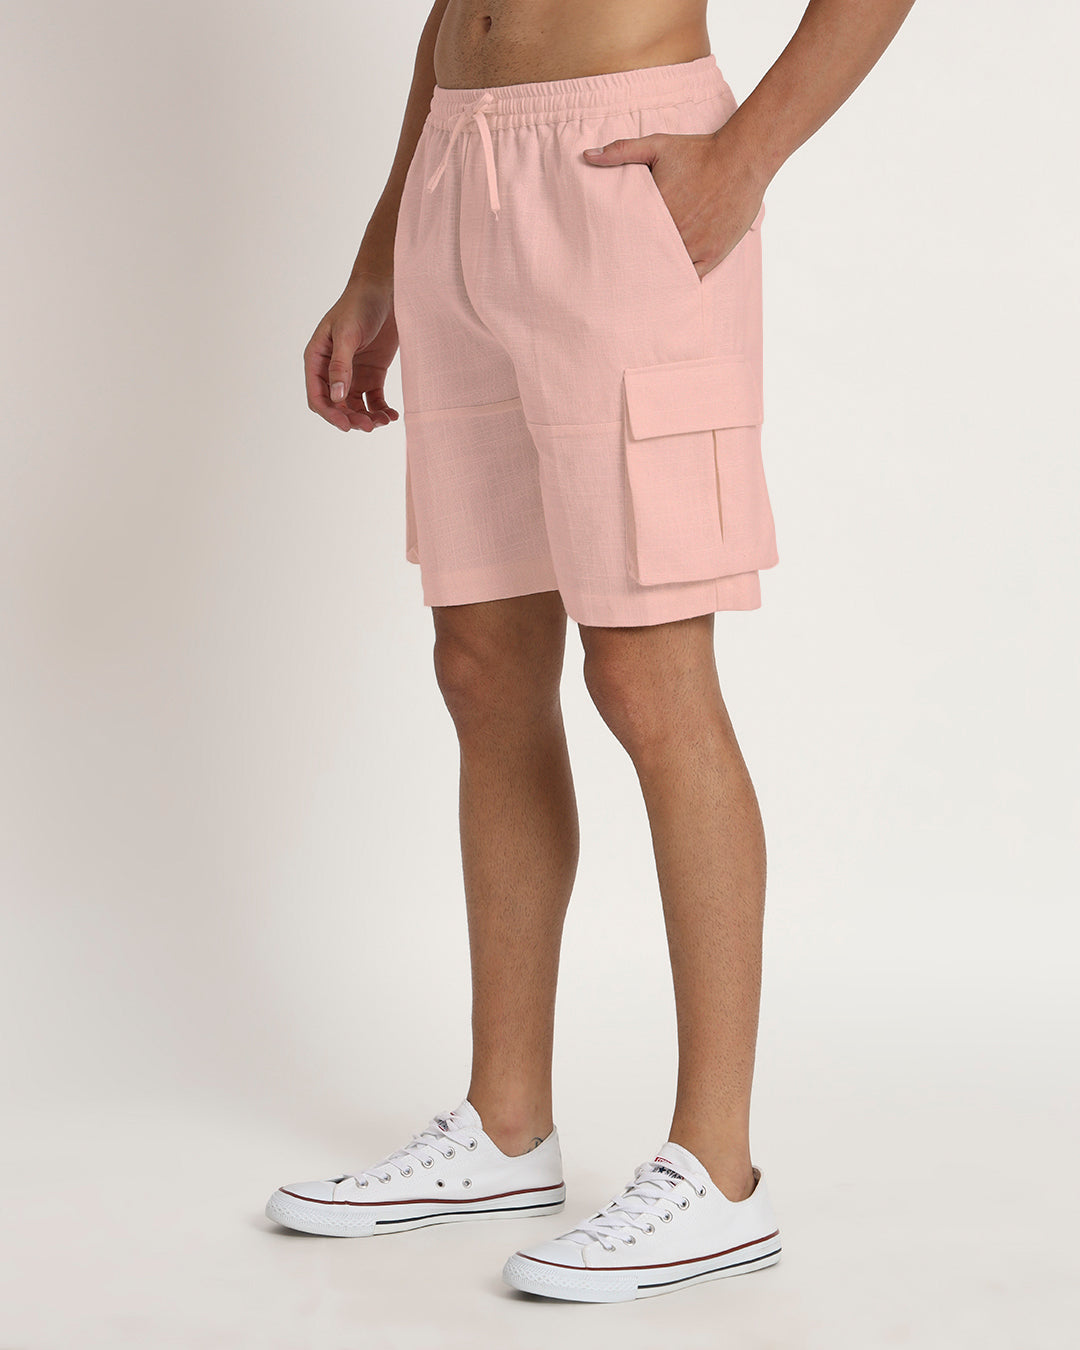 Combo : Slub Comfort Cargo Shorts Midnight Blue & Fondant Pink Men's Shorts